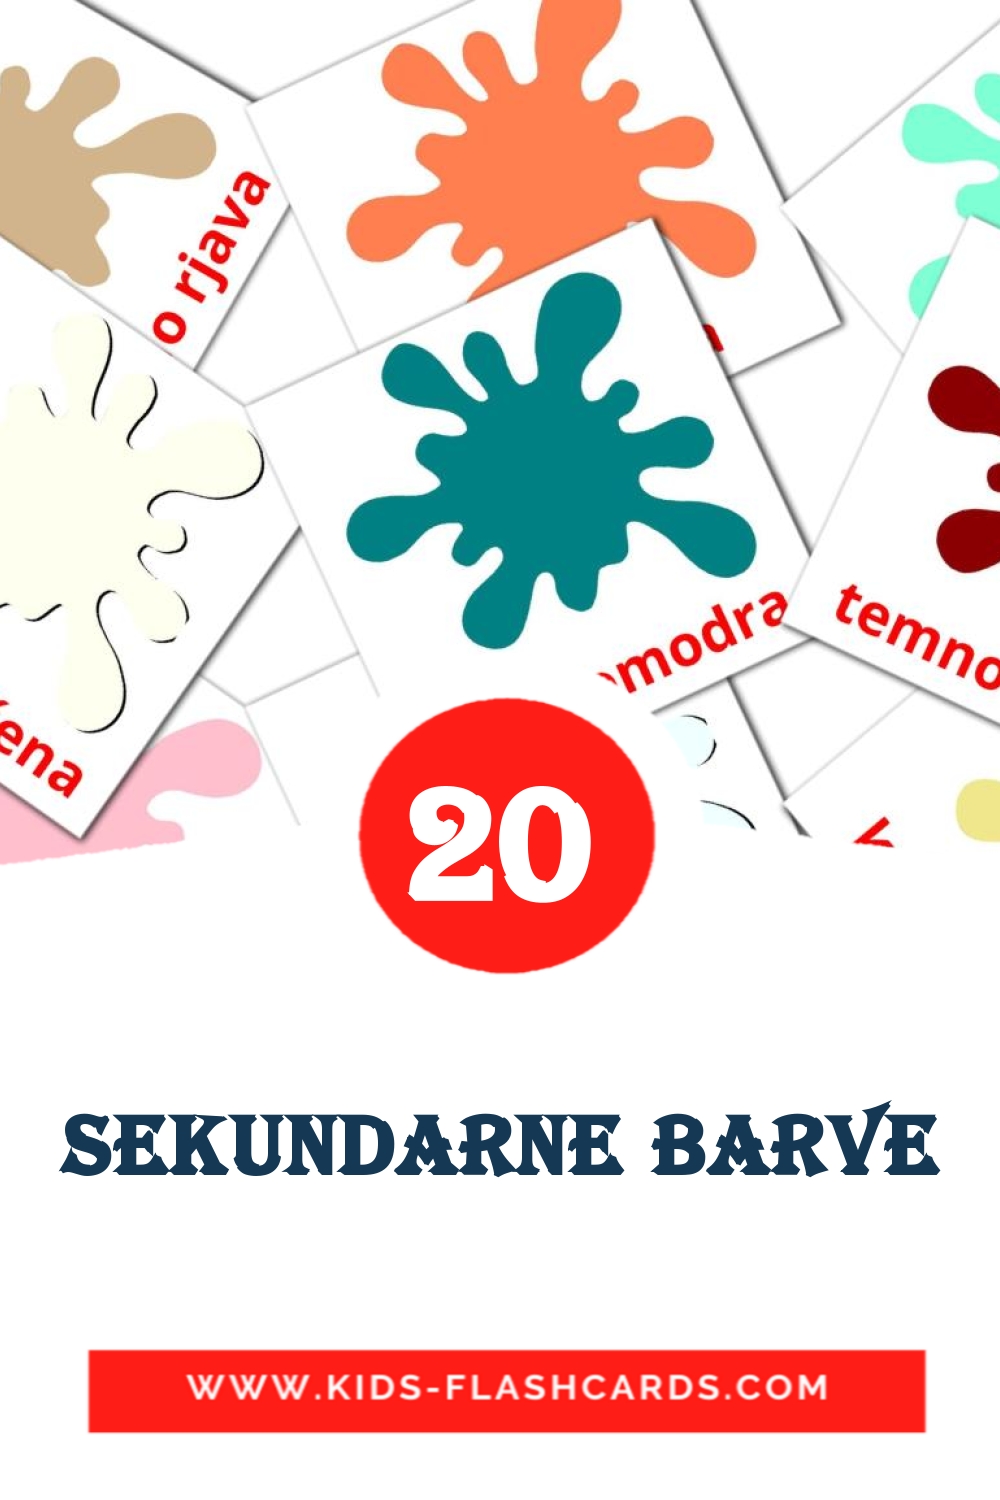 20 Sekundarne barve Bildkarten für den Kindergarten auf Slowenisch